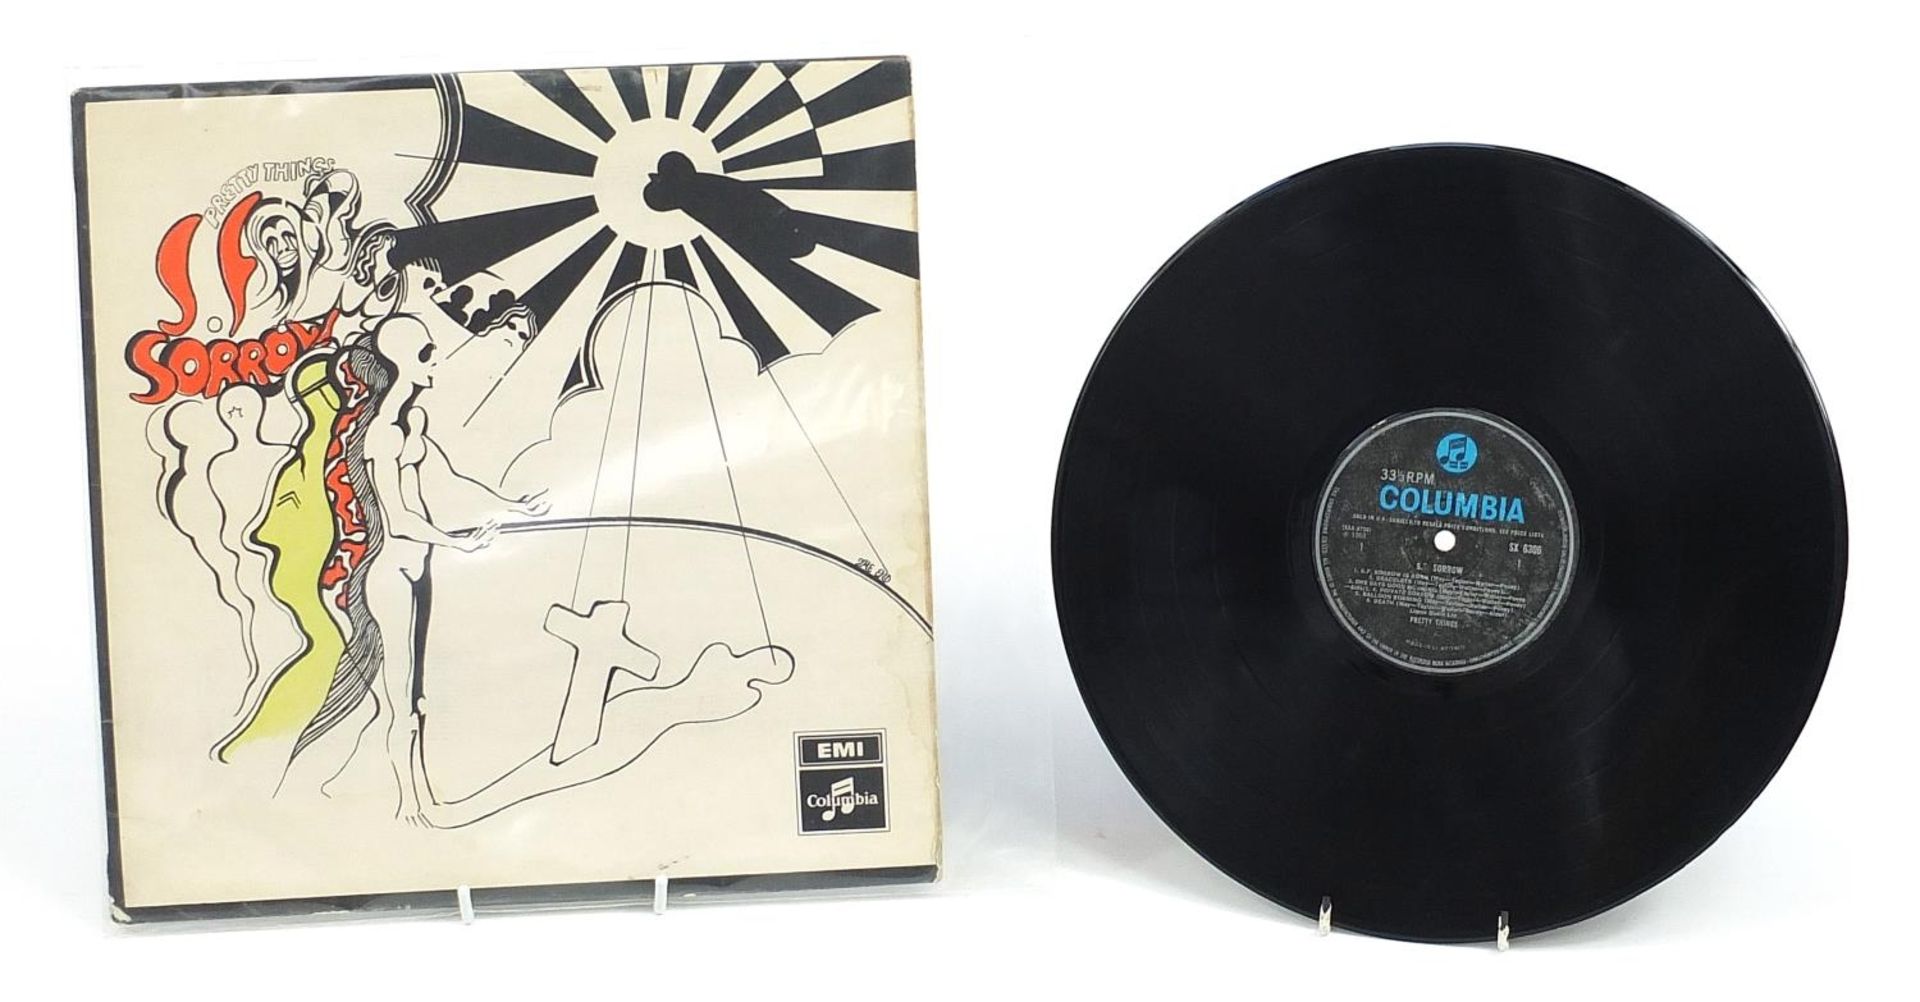 The Pretty Things S F Sorrow vinyl LP, Columbia SX 6306